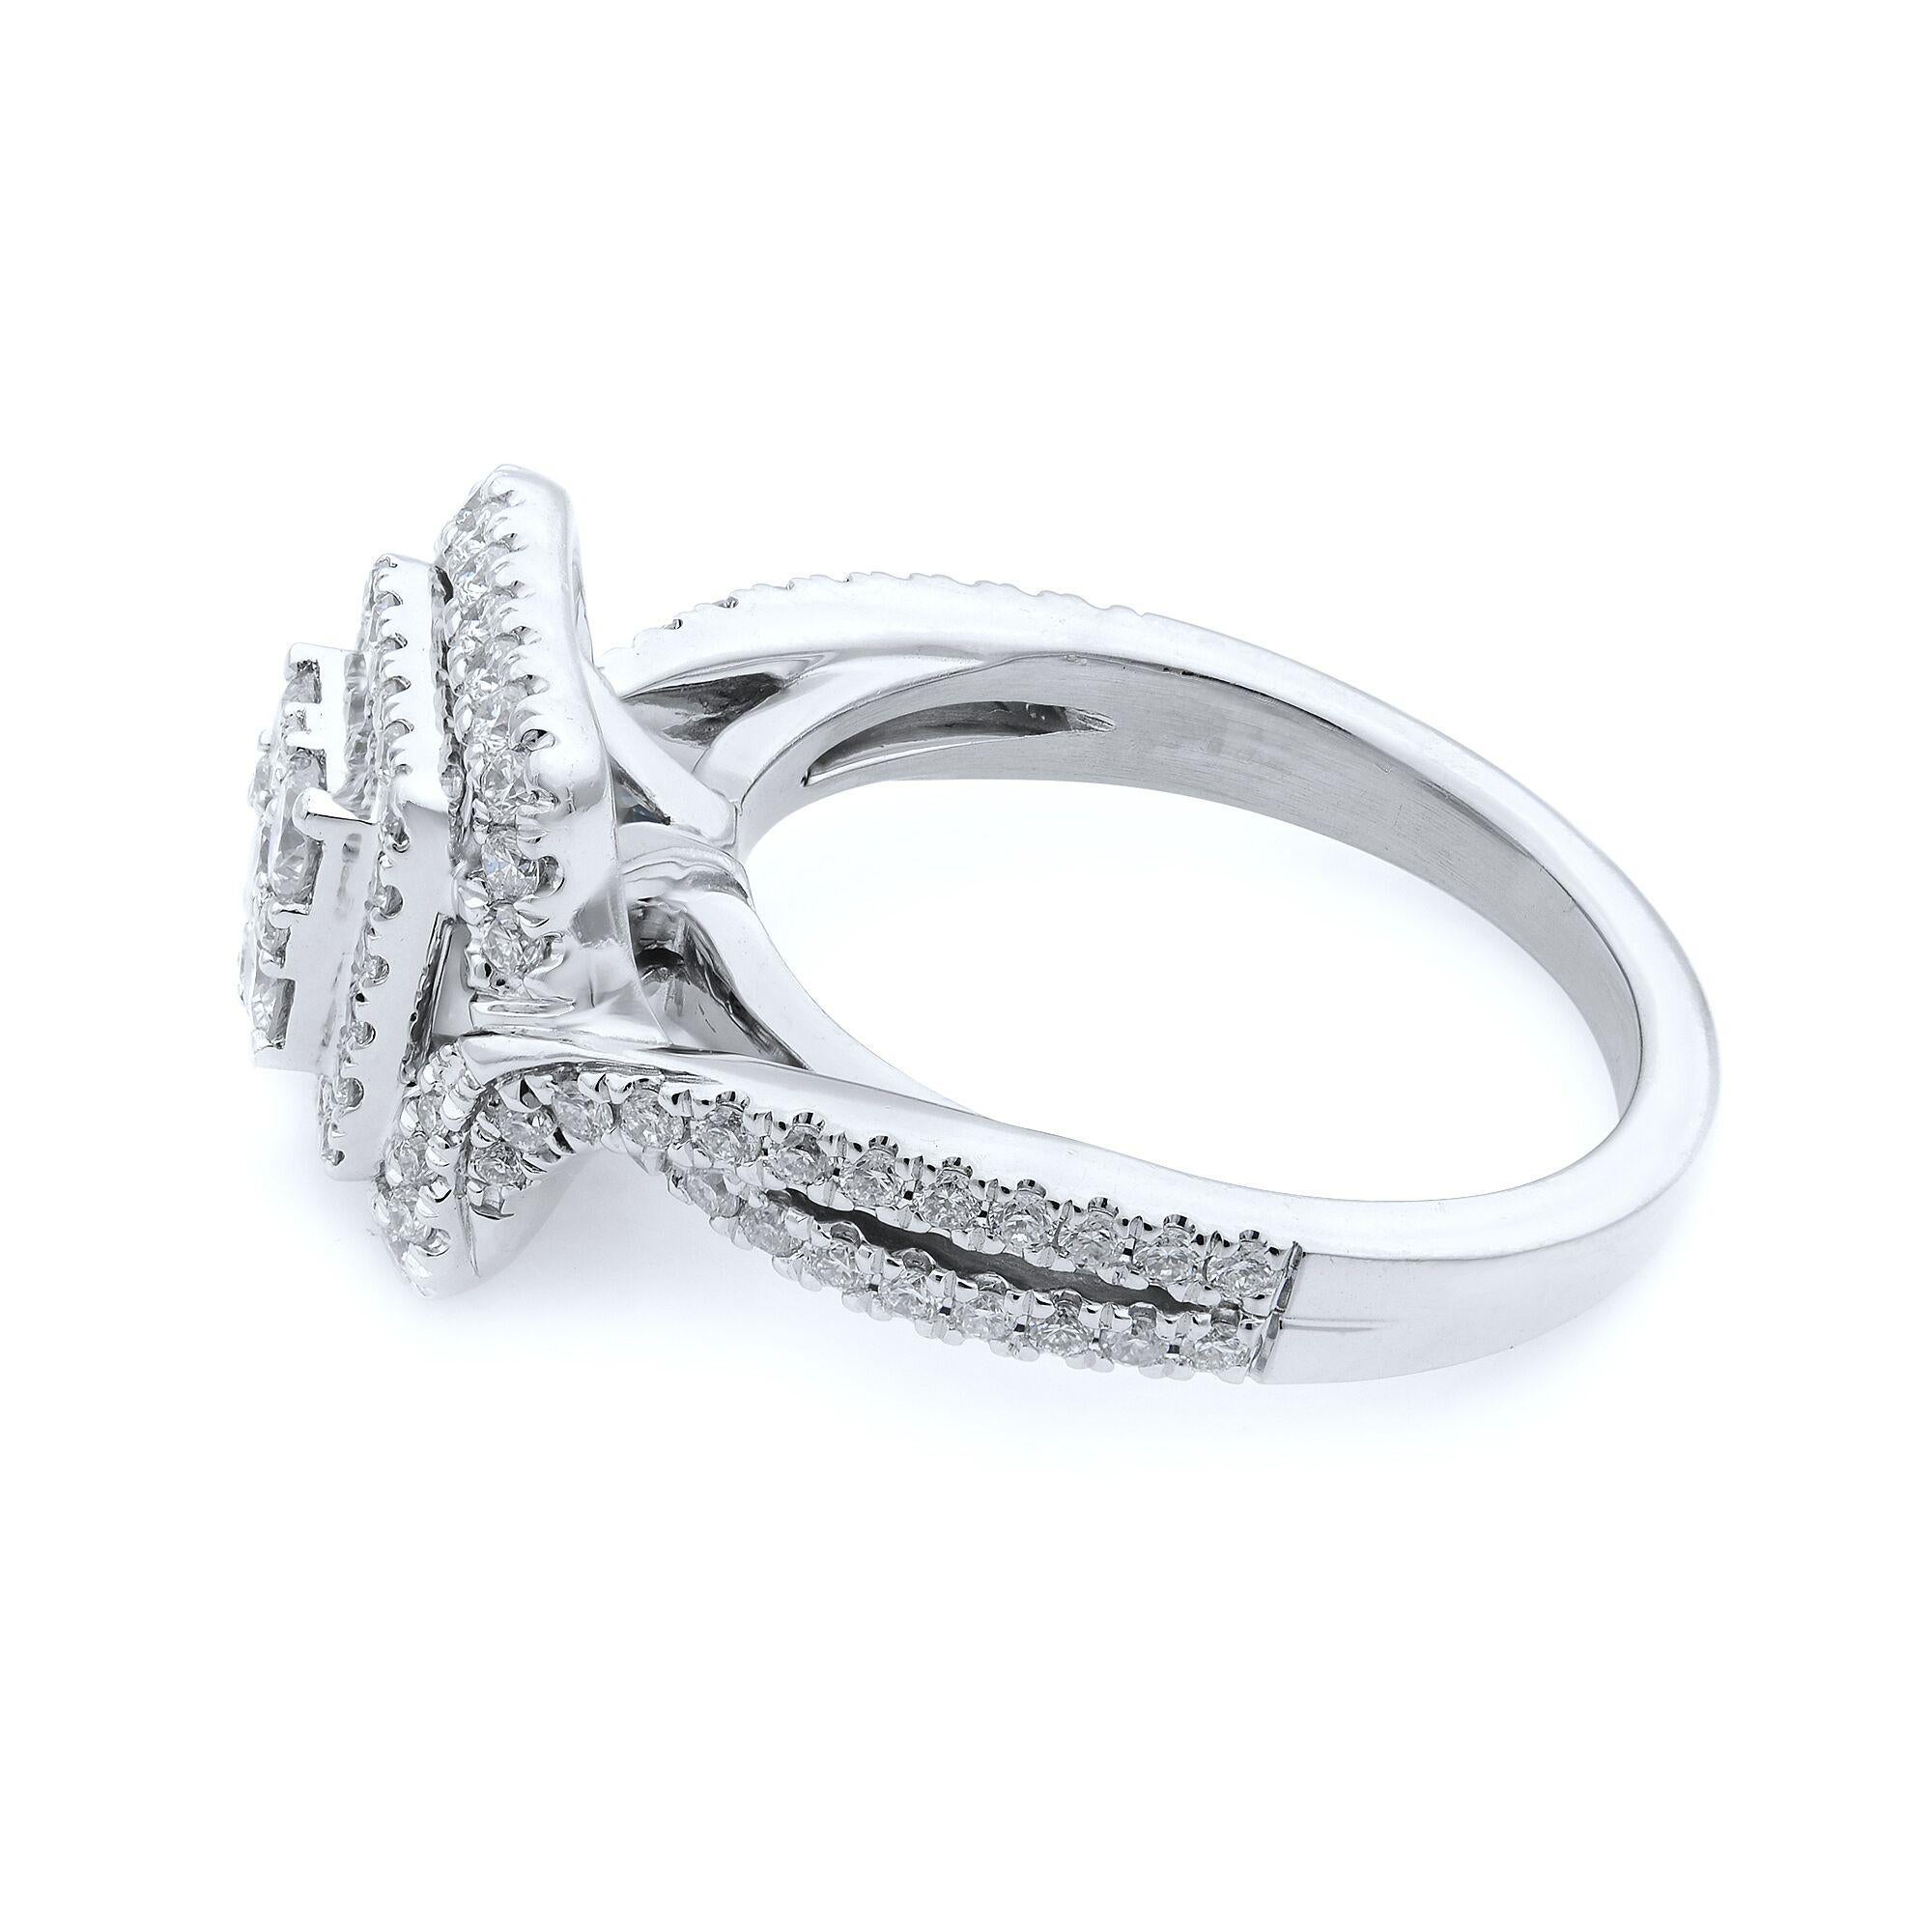 Cette bague de fiançailles à double halo de diamants pavés est ornée de superbes diamants centraux et ronds de taille princesse. L'anneau est magnifiquement entouré d'un double halo constellé de diamants éblouissants et le motif de la tige fendue de